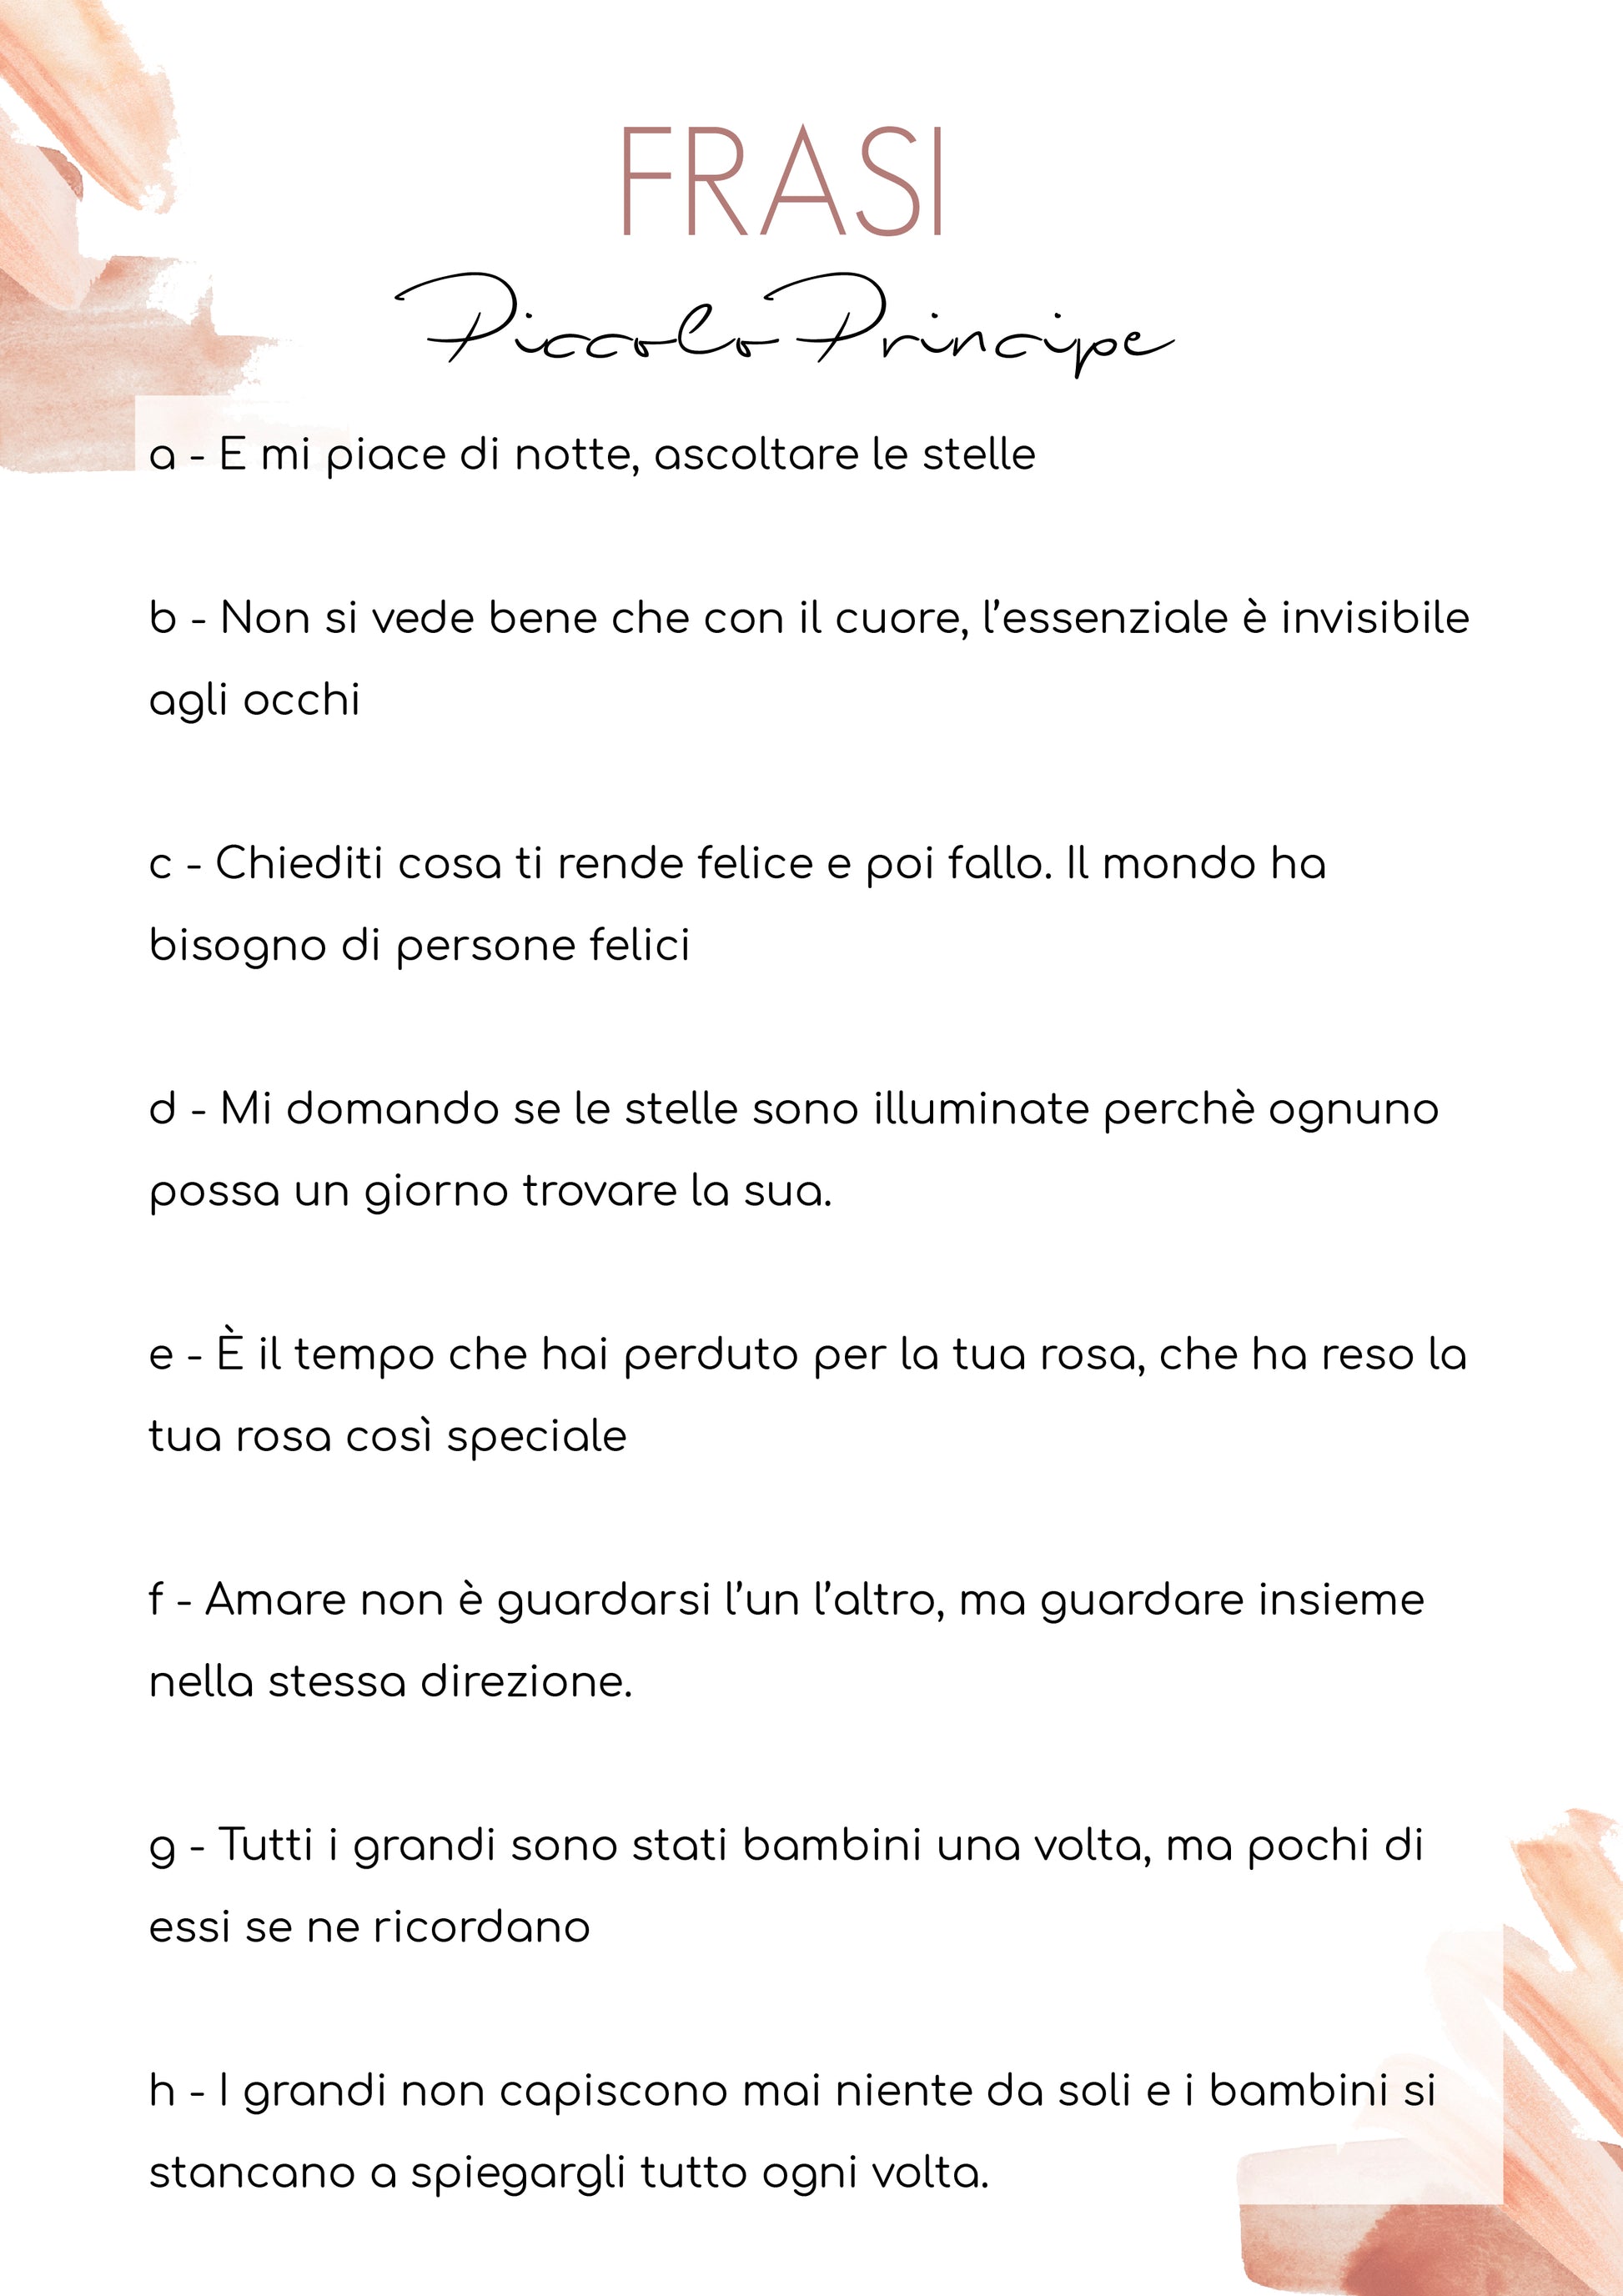 BOMBONIERA COMUNIONE - MADE IN ITALY: CORNICE PORTA FOTO E PICCOLO PRINCIPE  CON NOMI E DATA EVENTO STAMPATI - Doni Bomboniere